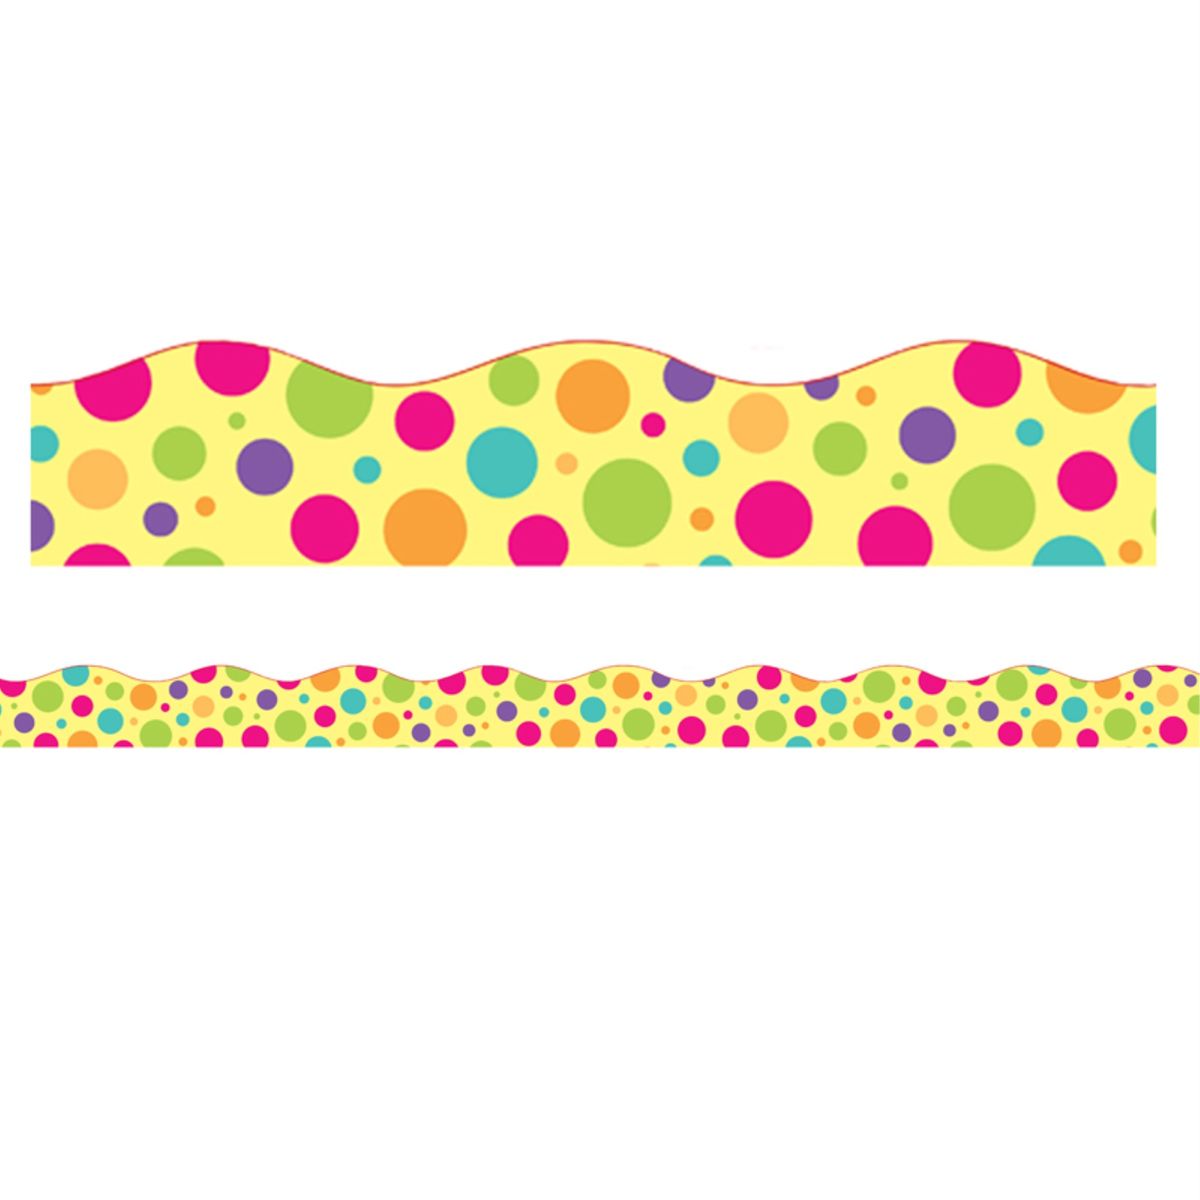 [RDY] [送料無料] Charles Leonard カラフルドット マグネットボーダー／トリム スカラップカット 24フィート／パック 2パック [楽天海外通販] | Charles Leonard Colorful Dot Magnetic Borders/Trims, Scallop Cut, 24'